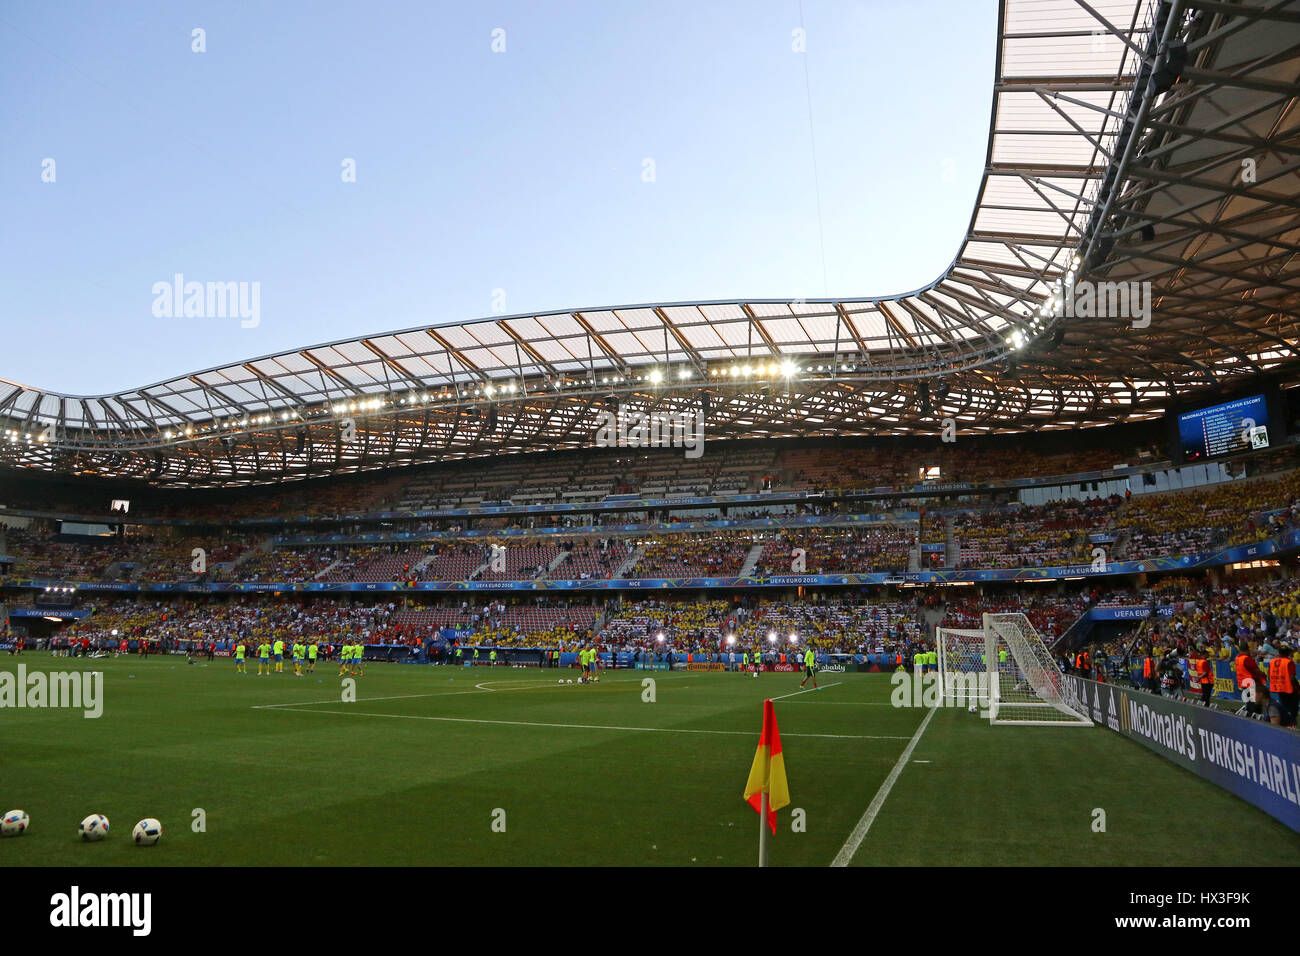 NICE, FRANCE - 22 juin 2016 : vue panoramique du Stade de l'Allianz Riviera Nice stadium avant l'UEFA EURO 2016 Suède jeu / Belgique Banque D'Images